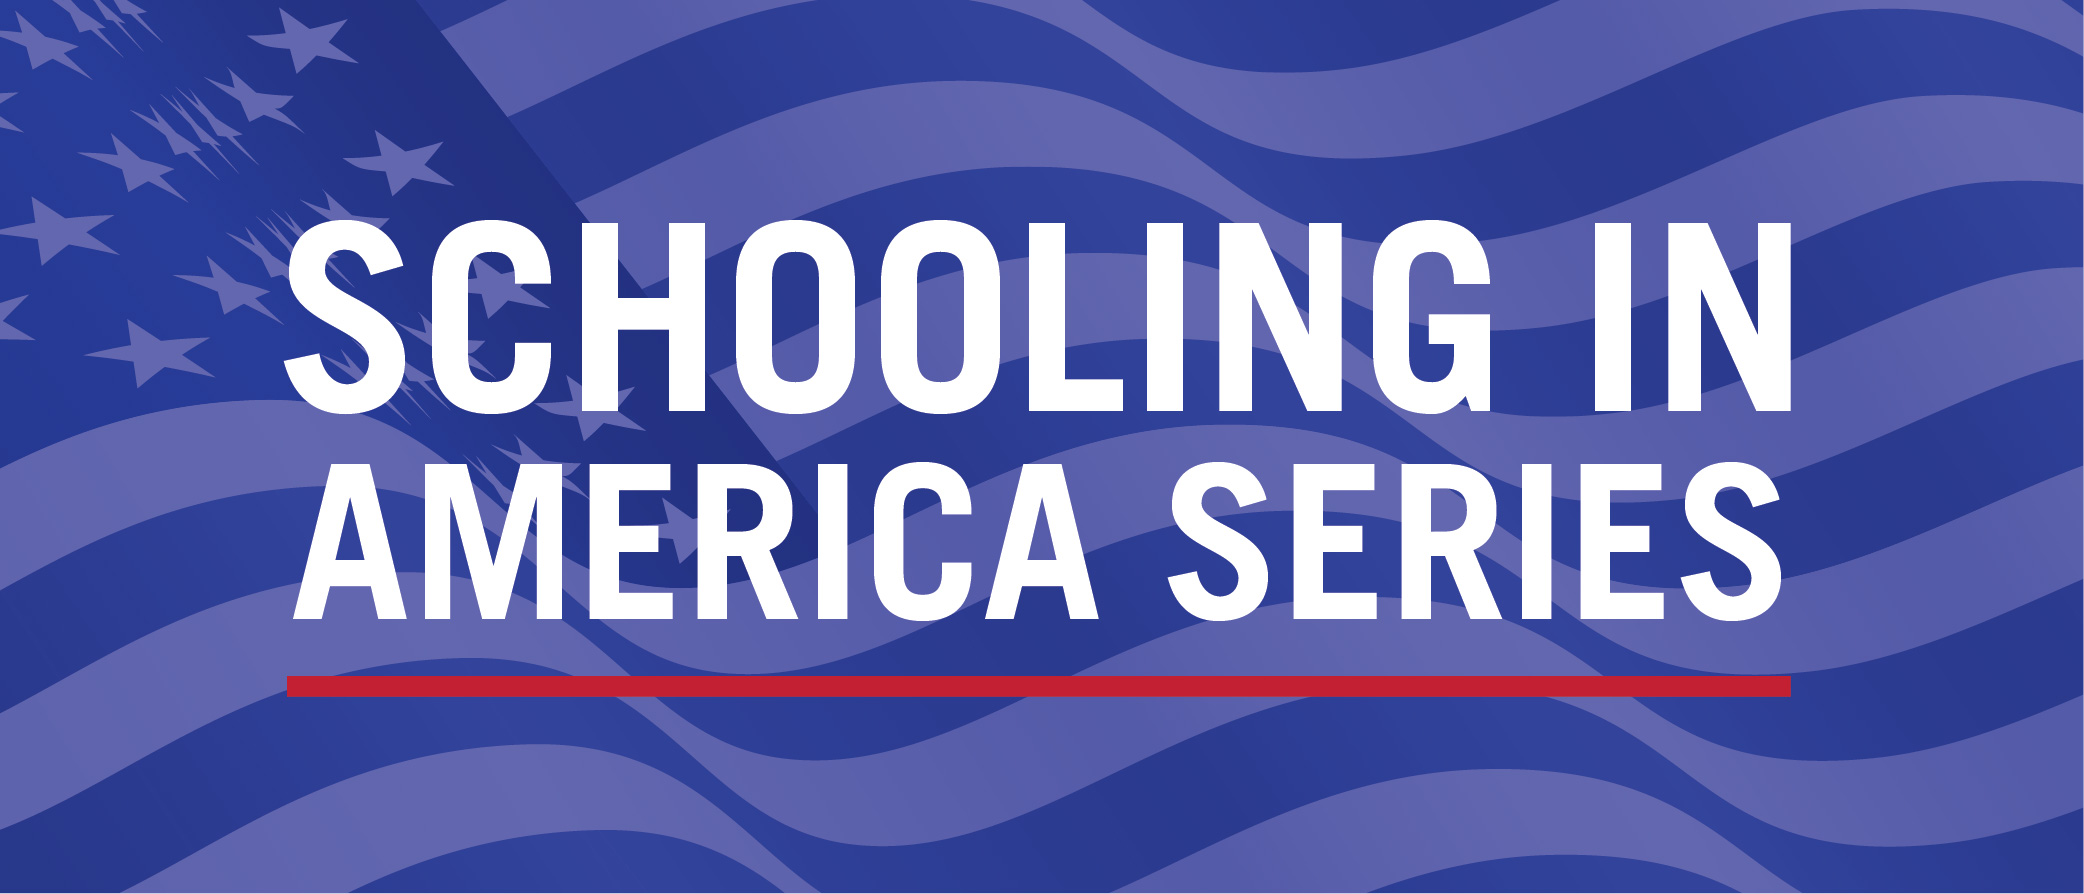 Schooling in America Series